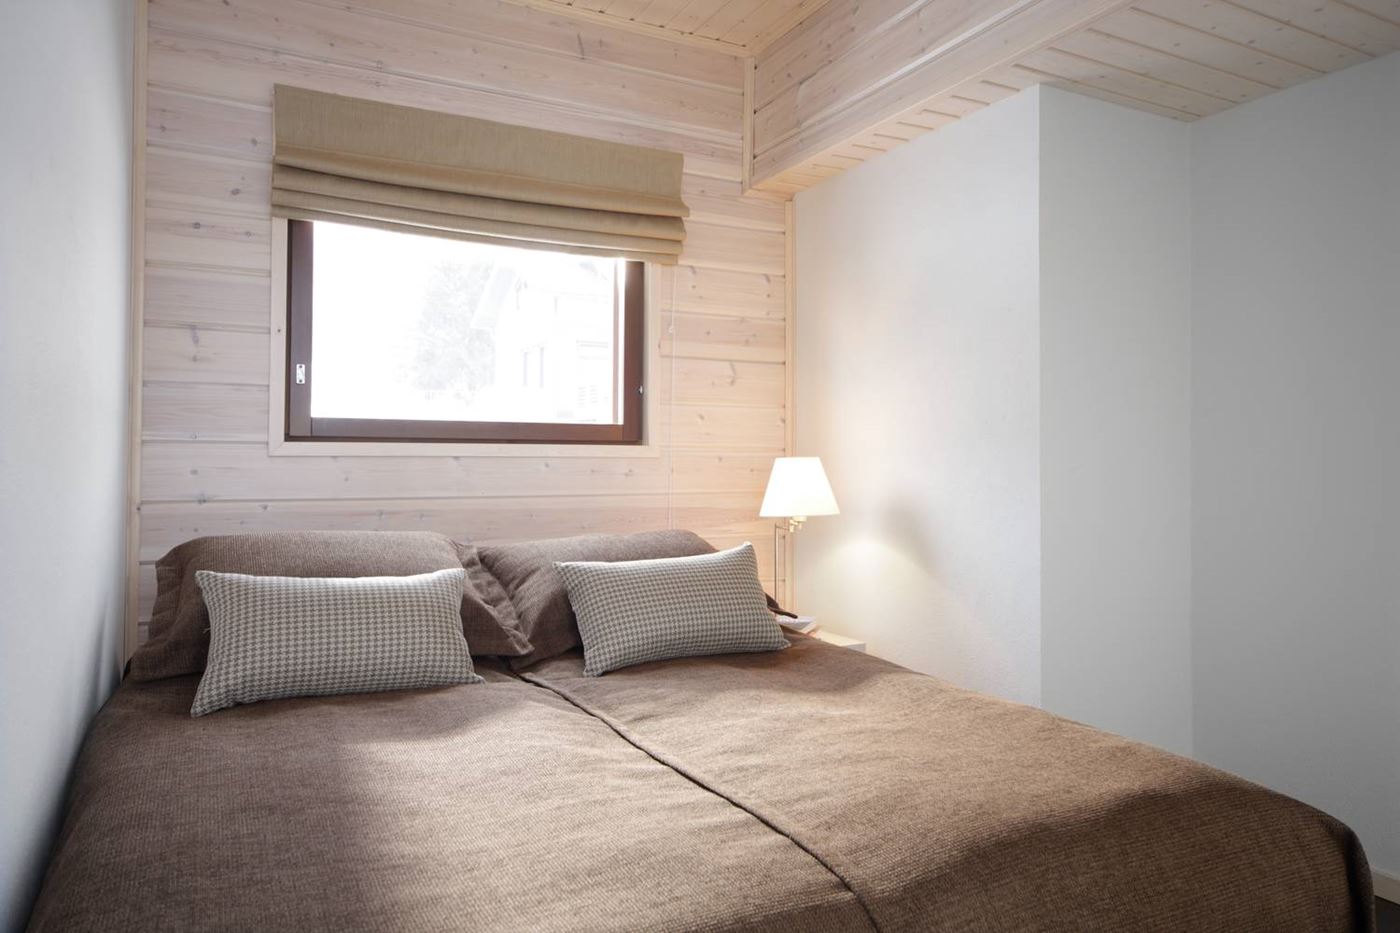 aurinkopaikka-bedroom.jpg